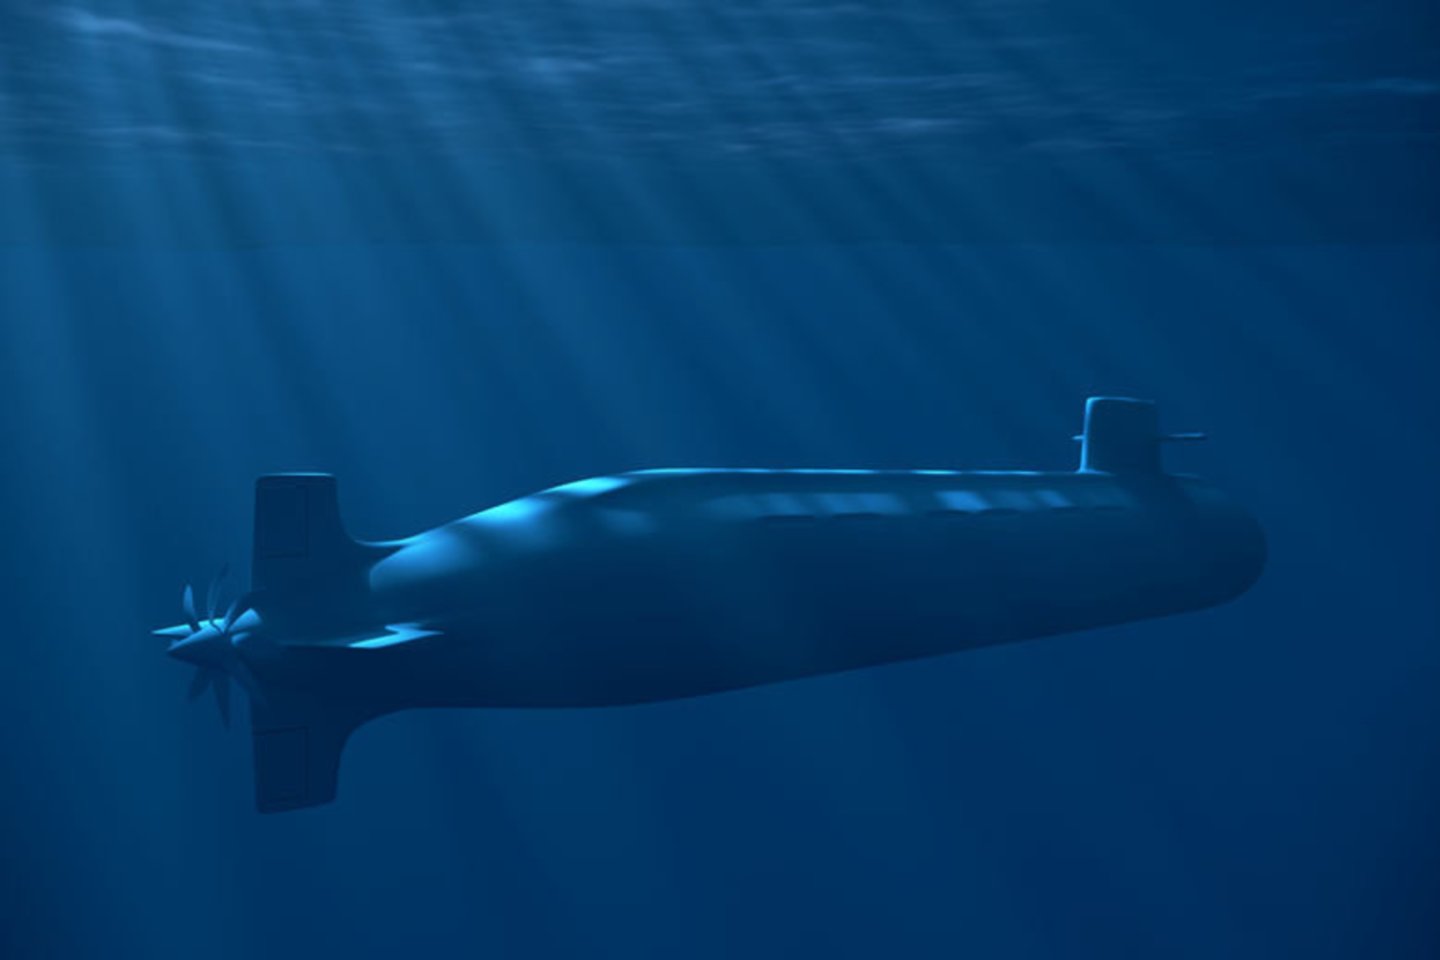 1954 m. į vandenį nuleistas pirmasis pasaulyje atominis povandeninis laivas „Nautilus“. Laivą pastatė amerikiečių gynybos pramonės bendrovė „General Dynamics Corporation“. 1958 m. šis laivas pirmasis po ledu praplaukė šiaurinį poliaratį.<br>123rf